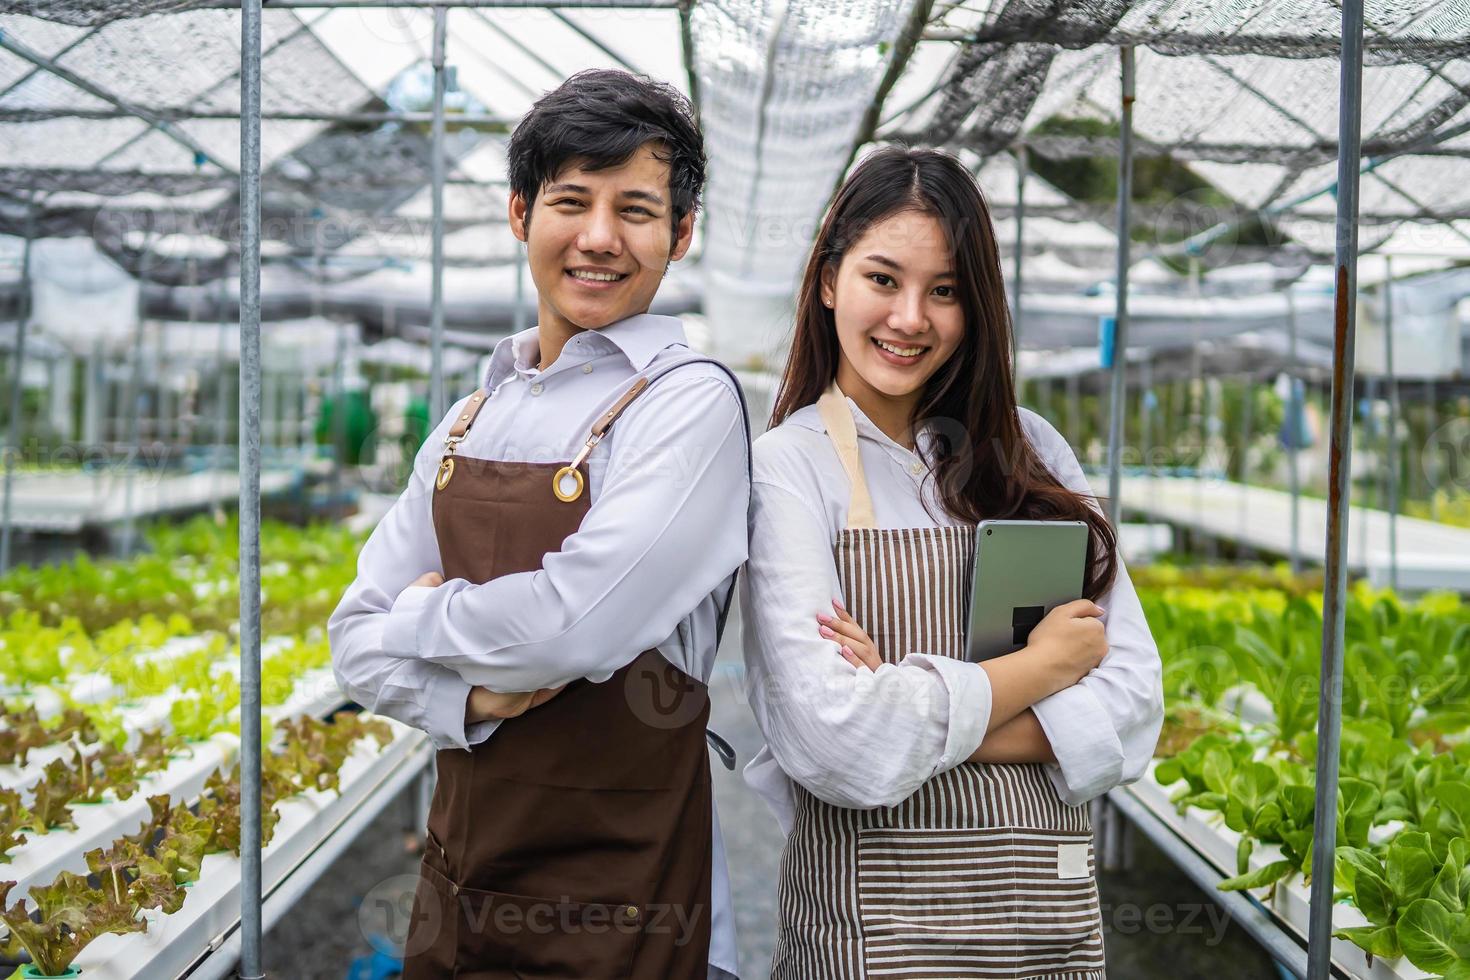 nouvelle génération de deux jeunes agriculteurs asiatiques souriants travaillant dans une ferme hydroponique de légumes, propriétaires de potagers hydroponiques prospères debout dans une plantation de serre pour une alimentation saine photo